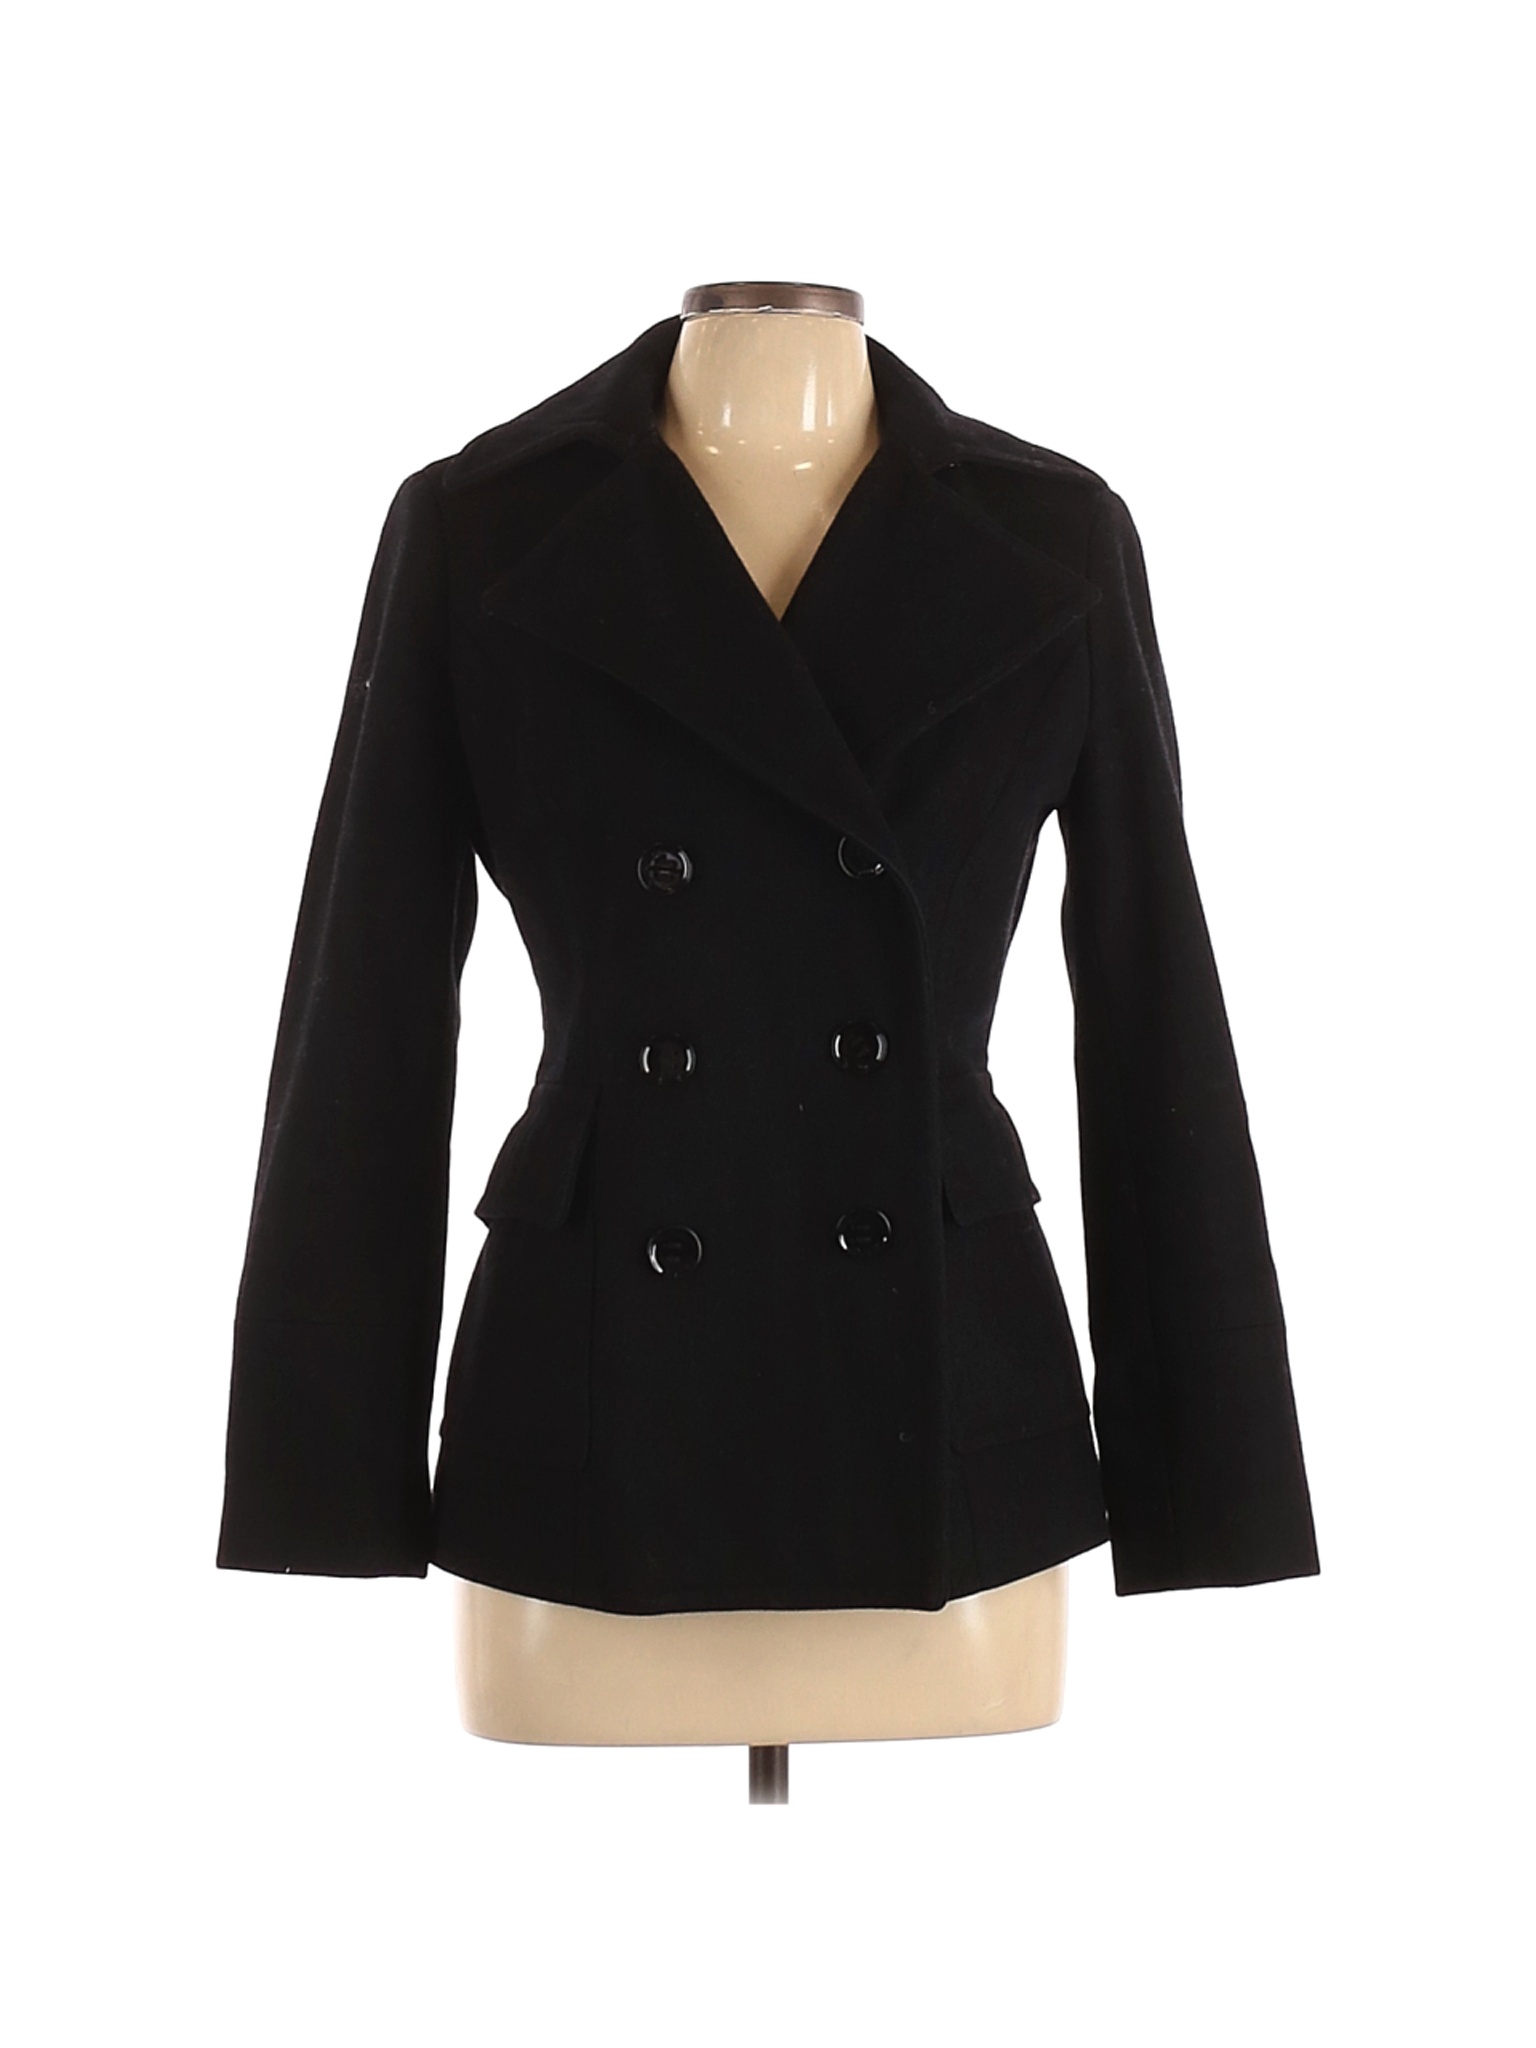 Calvin Klein Women Black Wool Coat 6 Petites | eBay